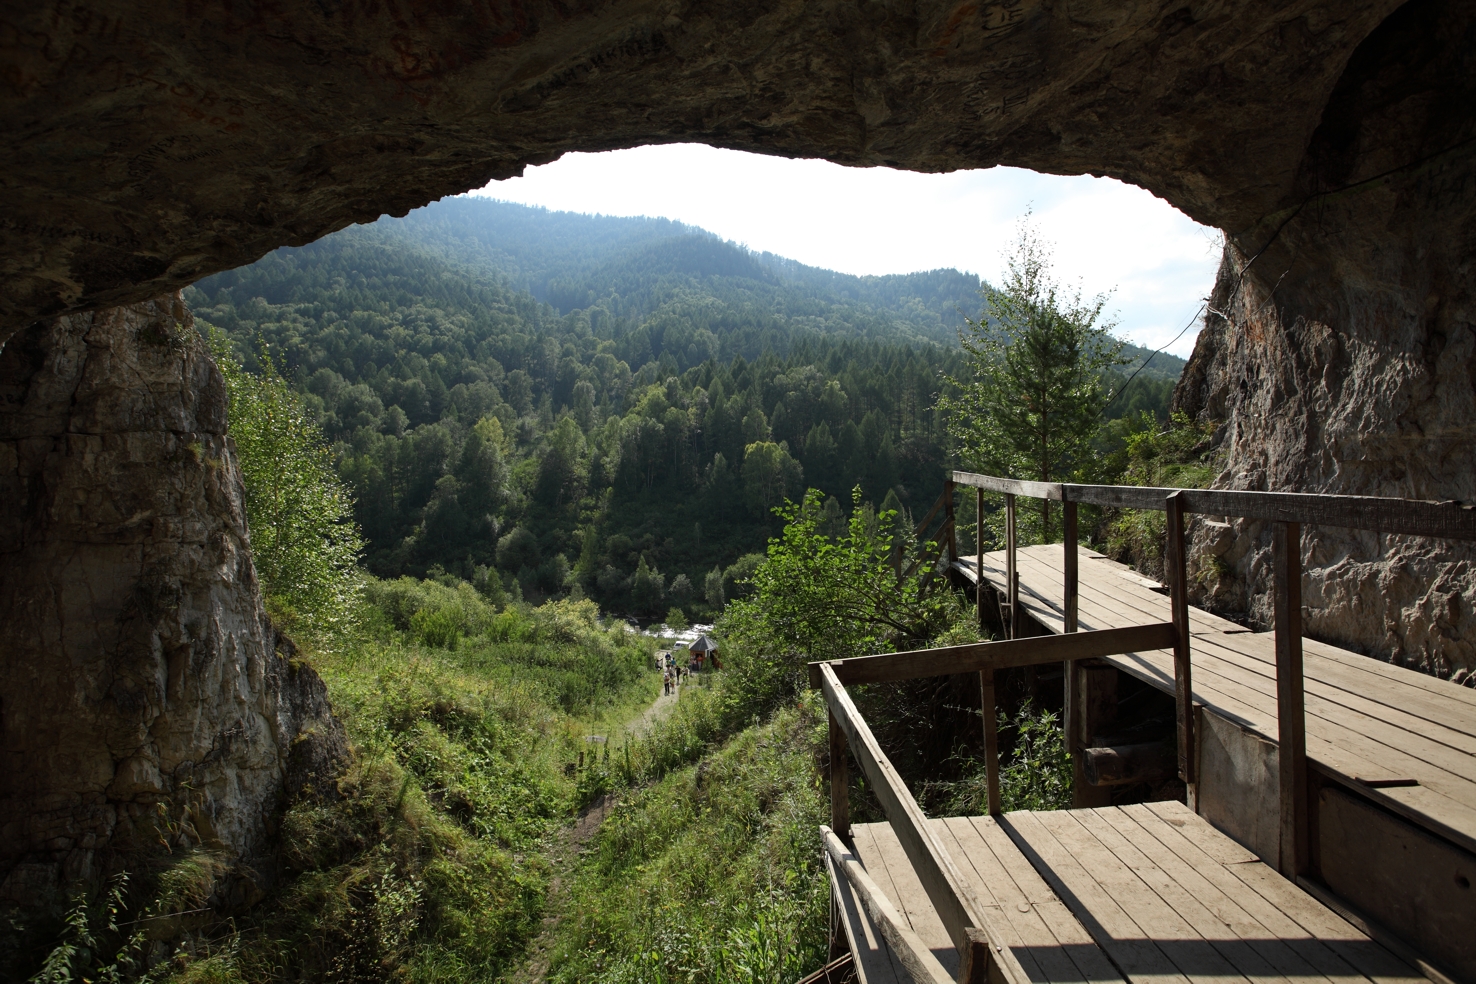 Вид из Денисовой пещеры